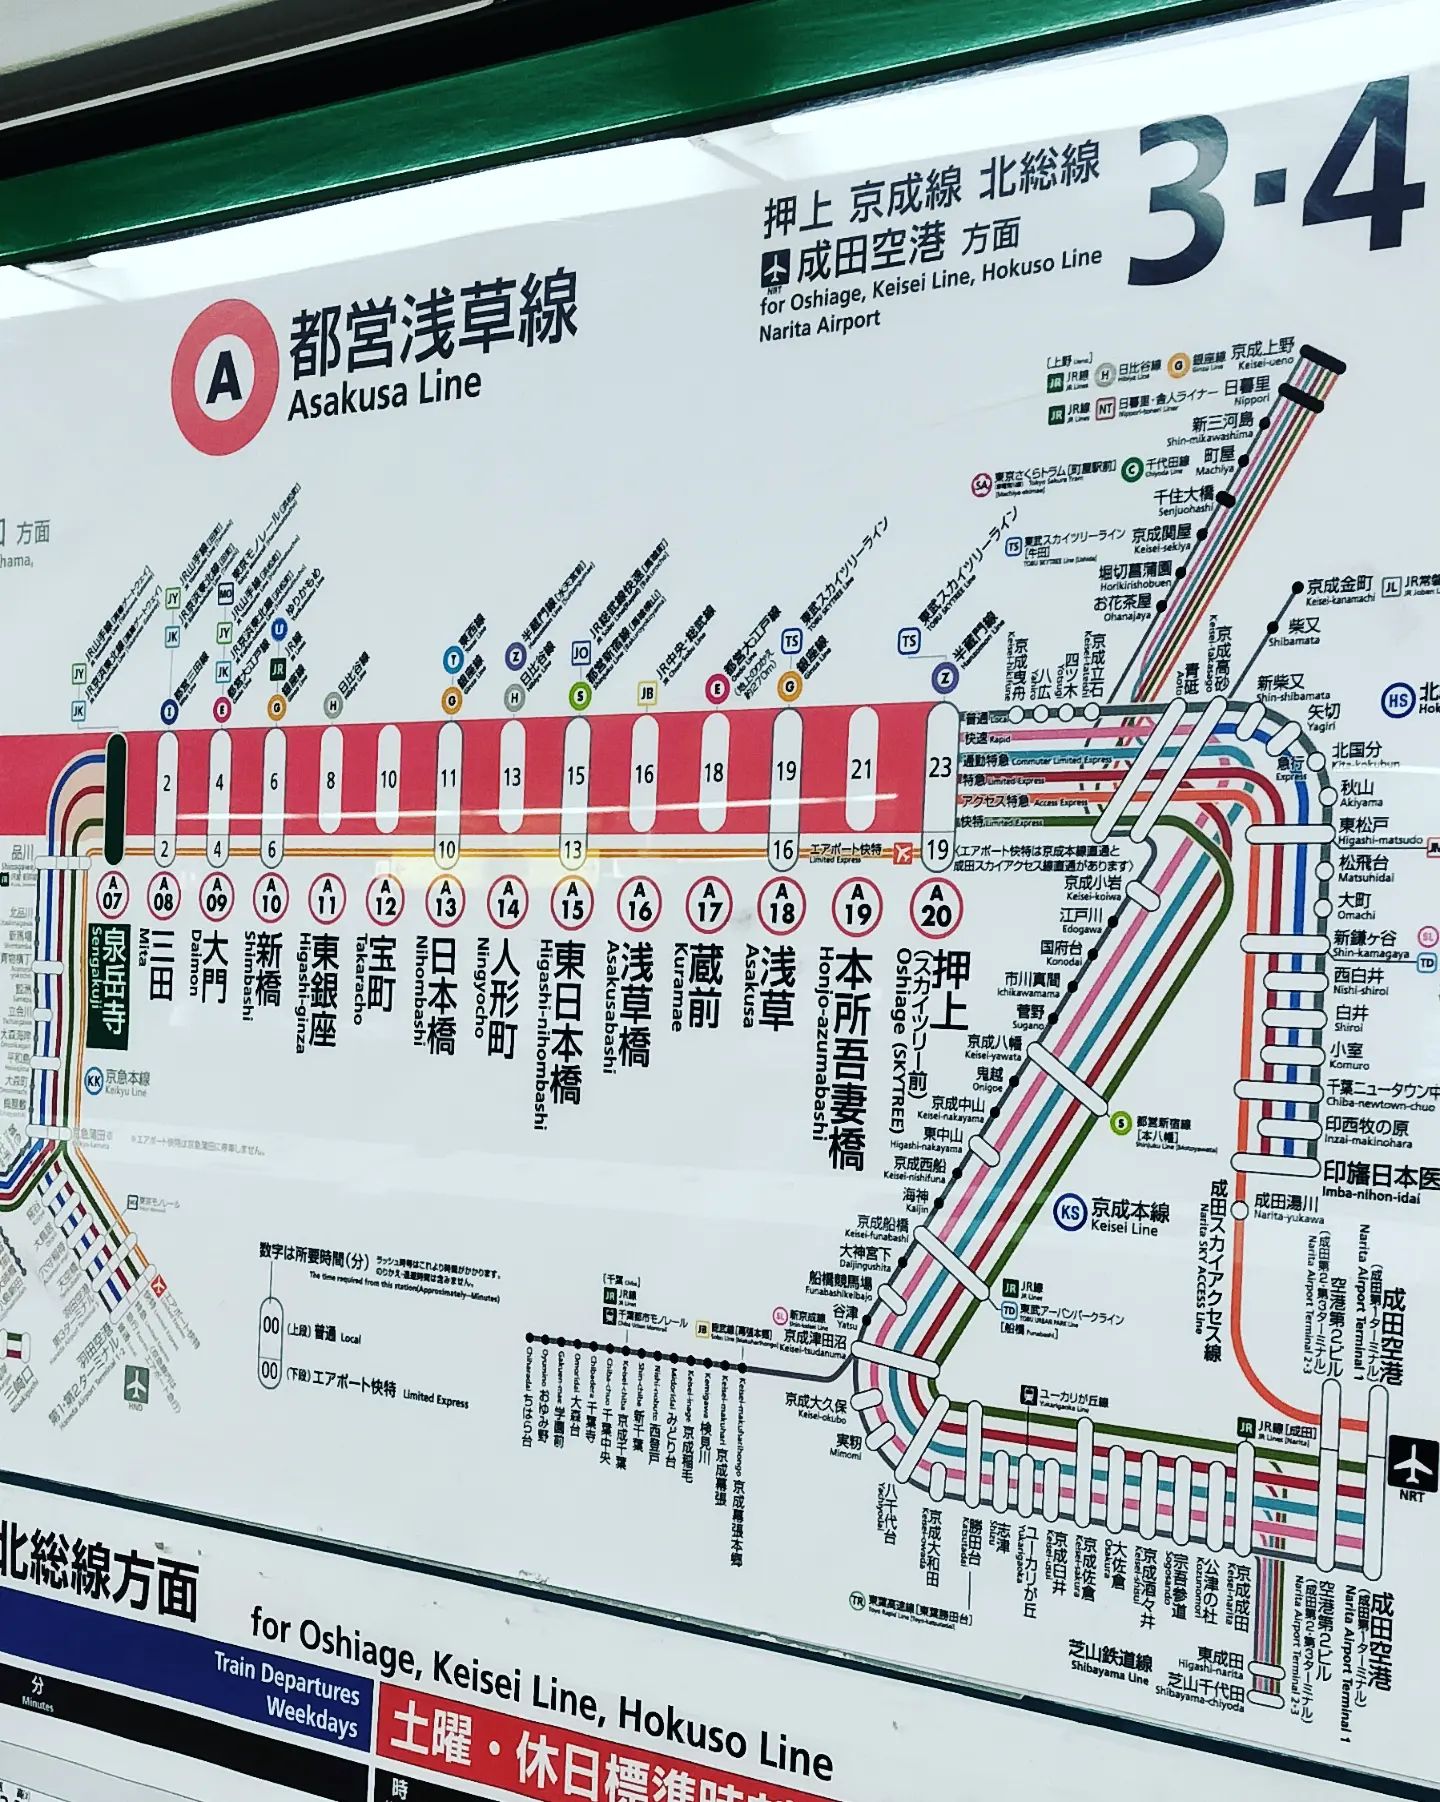 品川駅から で に来て。 まで行こうとしたんだけど、泉岳寺降りたら向かいのホームに電車が来てた。 行先表示に「 」と書かれてる。 この電車でいいの？ と迷ったけど、迷ってたら電車が行っちゃったよ…。この電車でよかったんだ。 行きの電車は、都営浅草線、 、 に直通して、印旛日本医大駅まで行くんだな… https://toyokeizai.net/articles/-/237842?page=3 行先表示に「 印旛日本医大」とか書かれてたら、どこ行く電車かわからない。参ったねほんと。